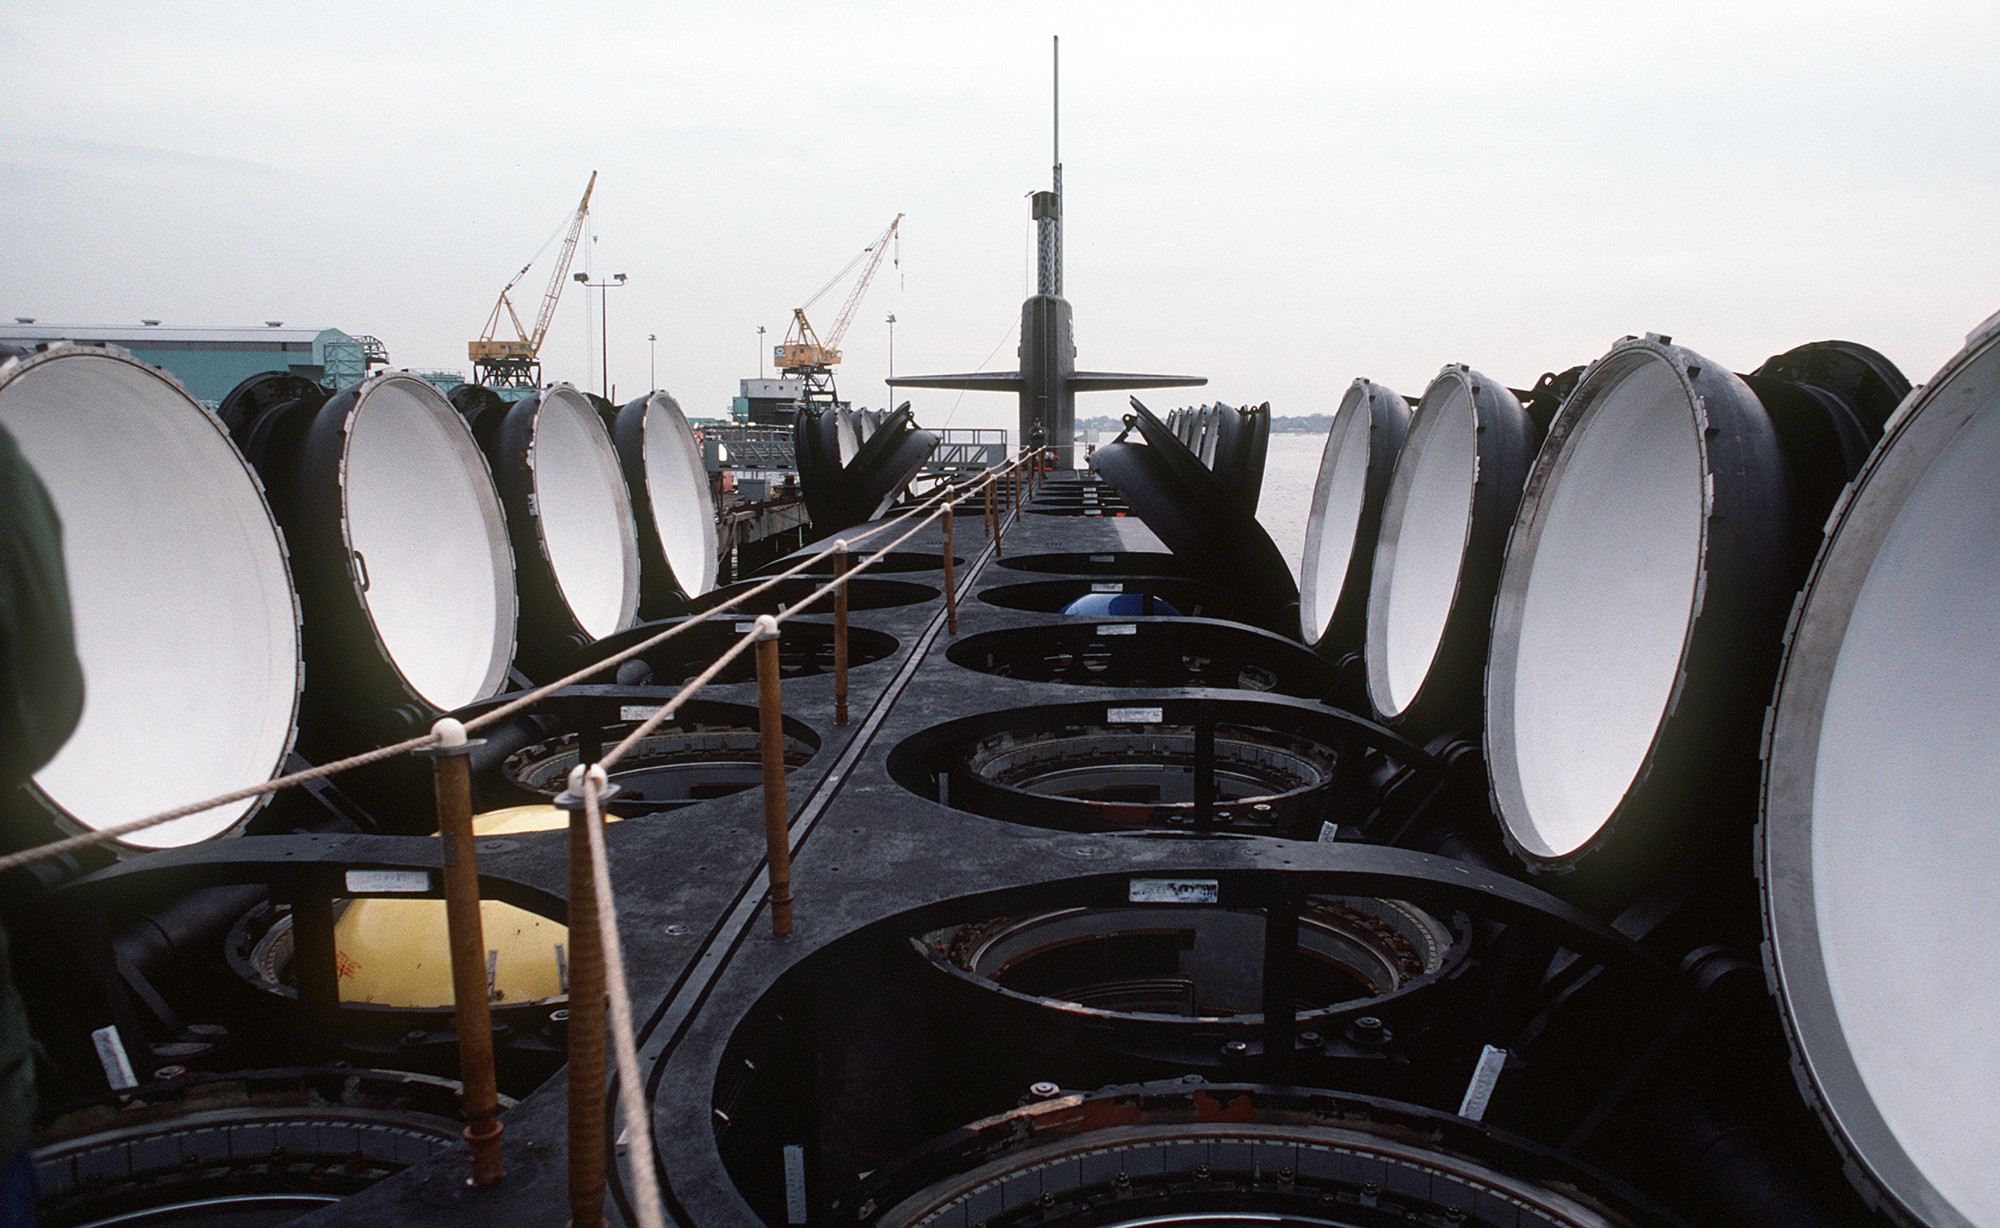 ssbn-726 uss ohio ballistic missile submarine us navy 1981 94 launching tubes